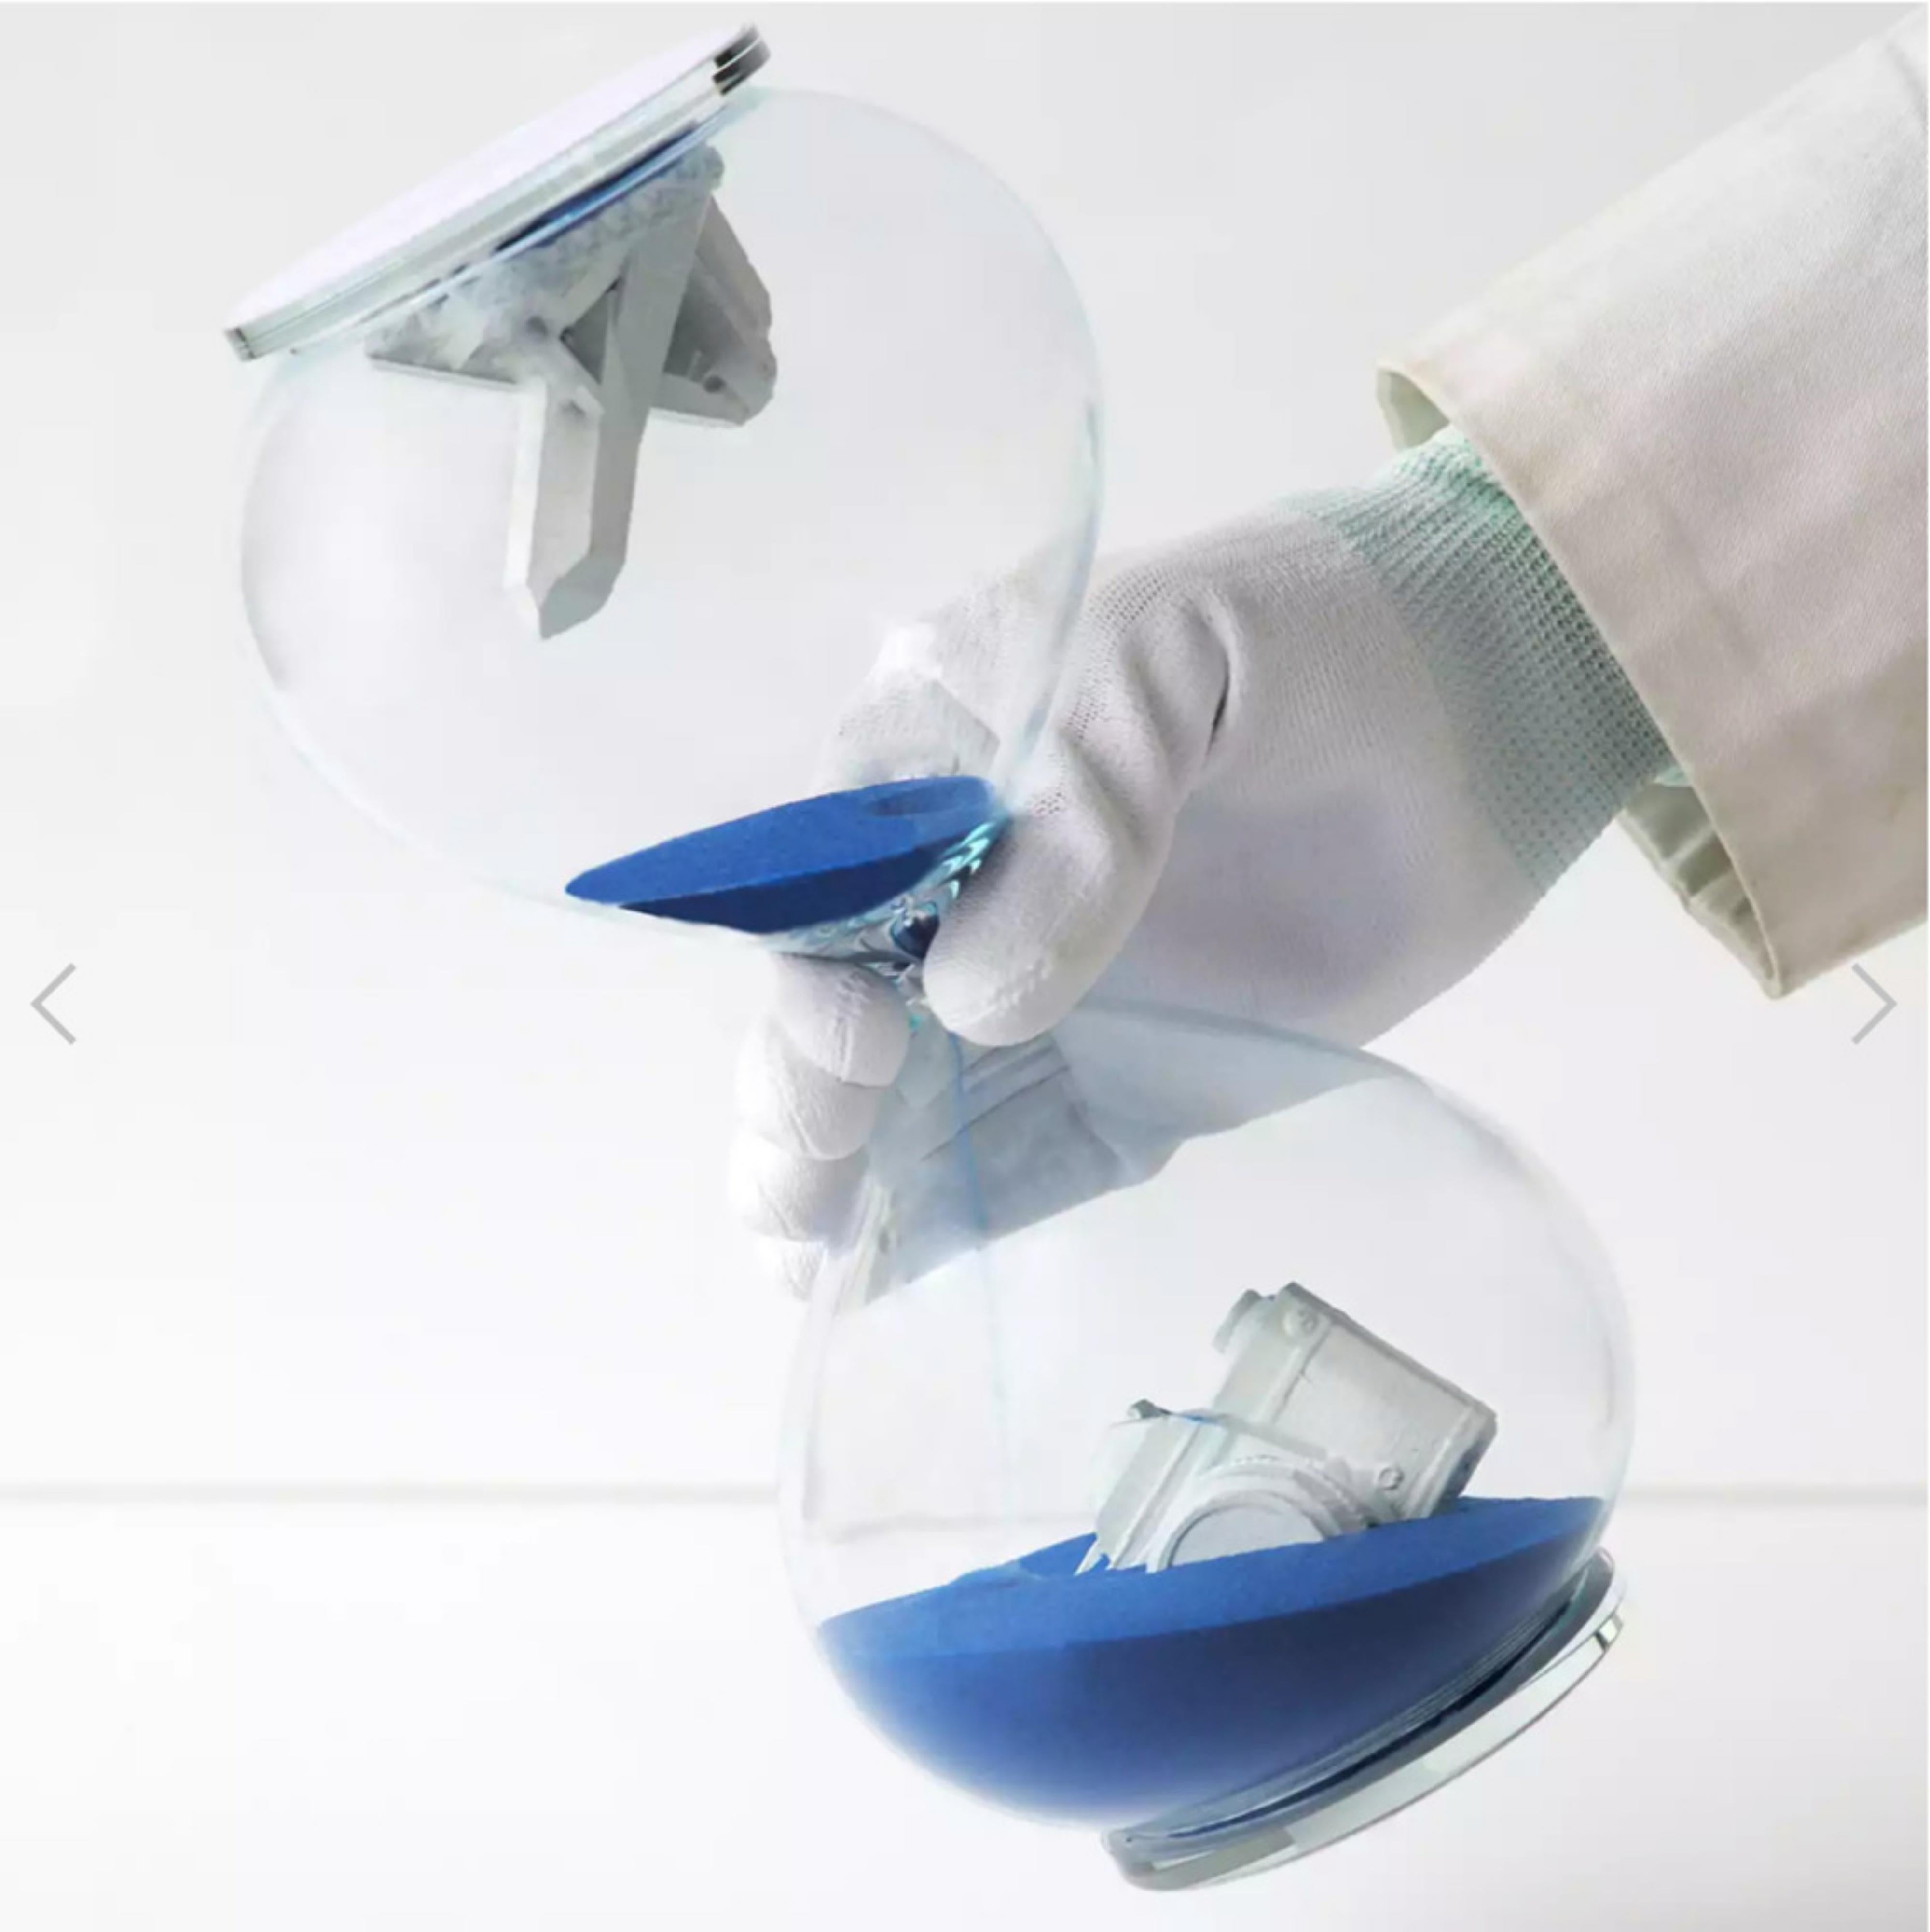 Figurative Sculpture Daniel Arsham - Hourglass (bleu) : sculpture en verre, appareil photo coulé et cristal de quartz, neuf dans sa boîte